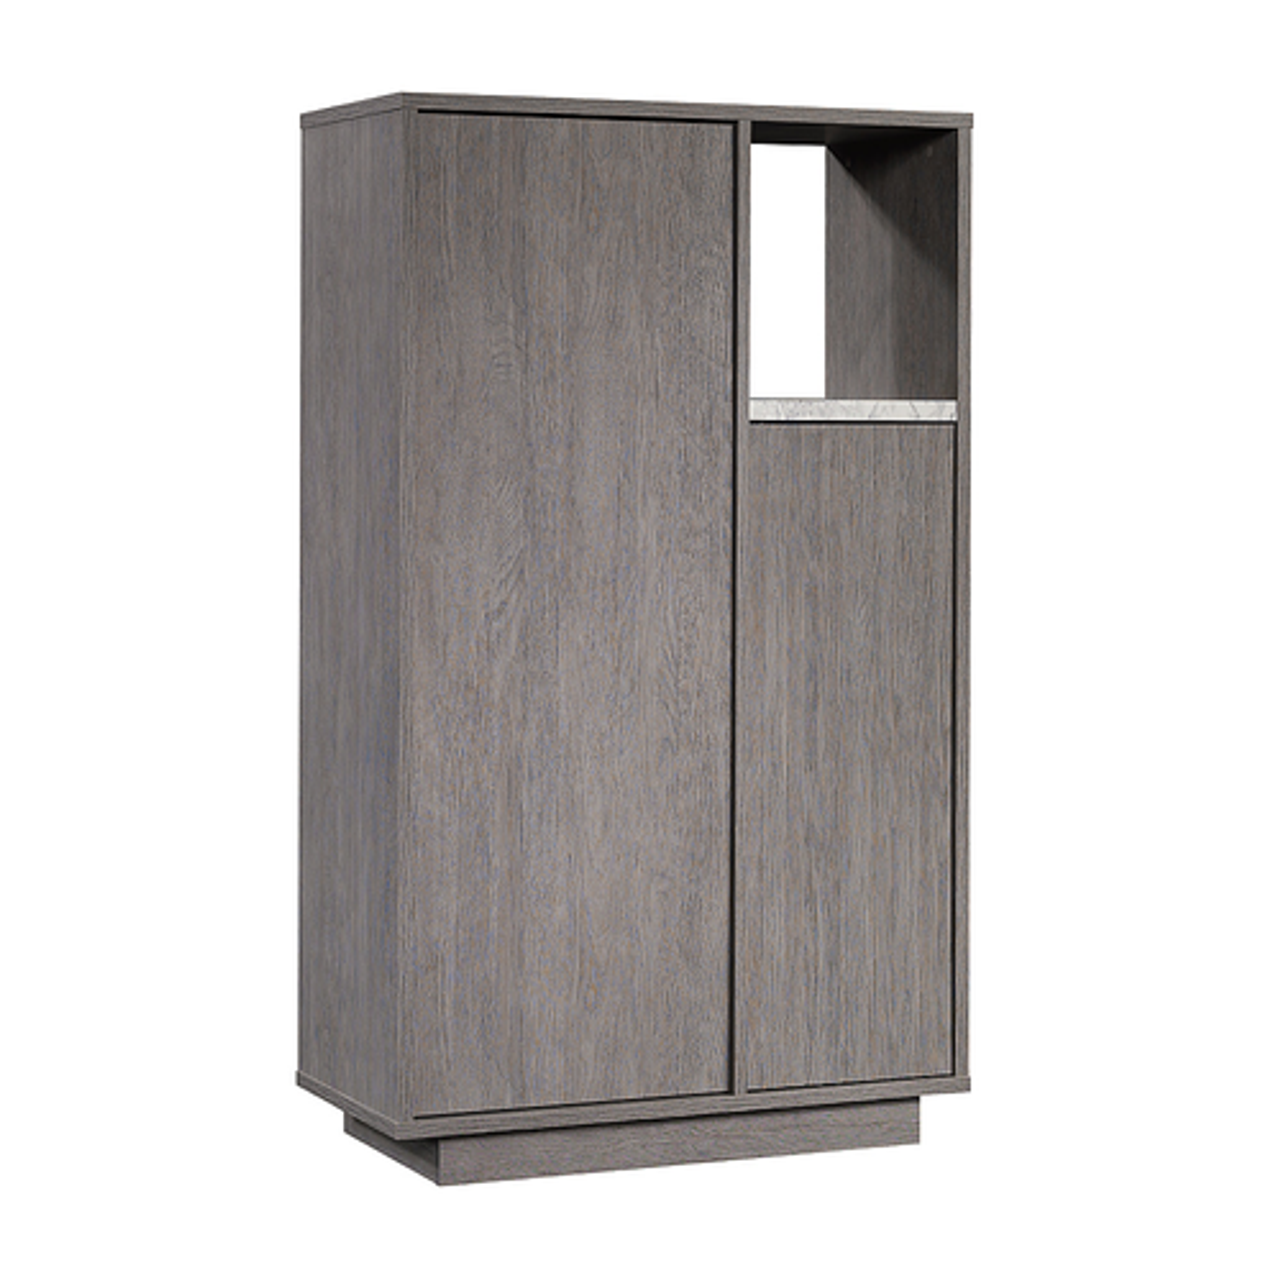 Sauder - Contemporary Storage Cabinet in Ashen Oak - Ashen Oak™